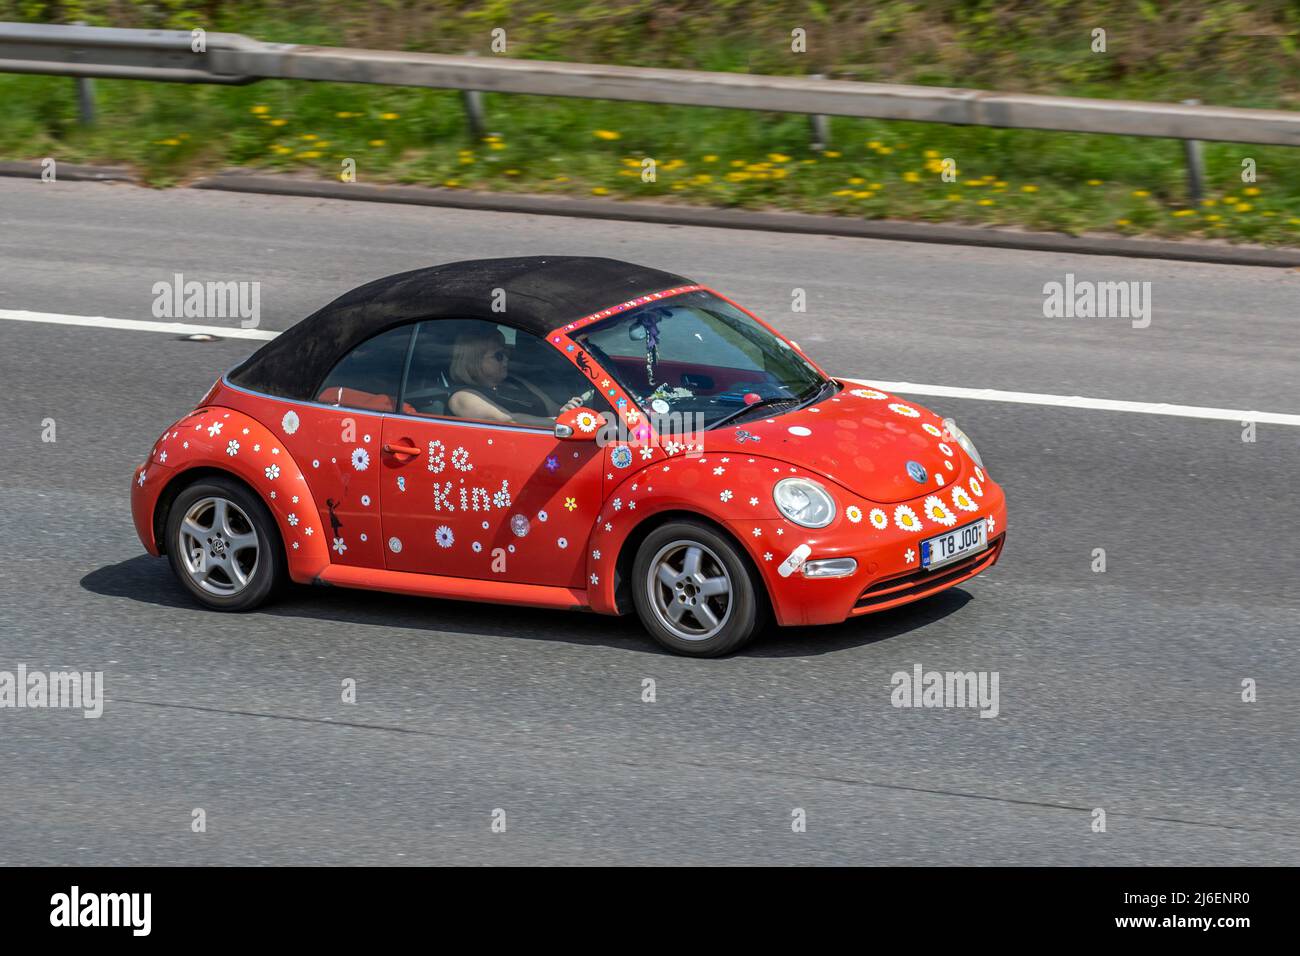 'Be Kind' 2004 orange personnalisé sur mesure VW Volkswagen Beetle 8V 1596cc 5 vitesses manuelle cabriolet ; conduite sur l'autoroute M61, Royaume-Uni Banque D'Images